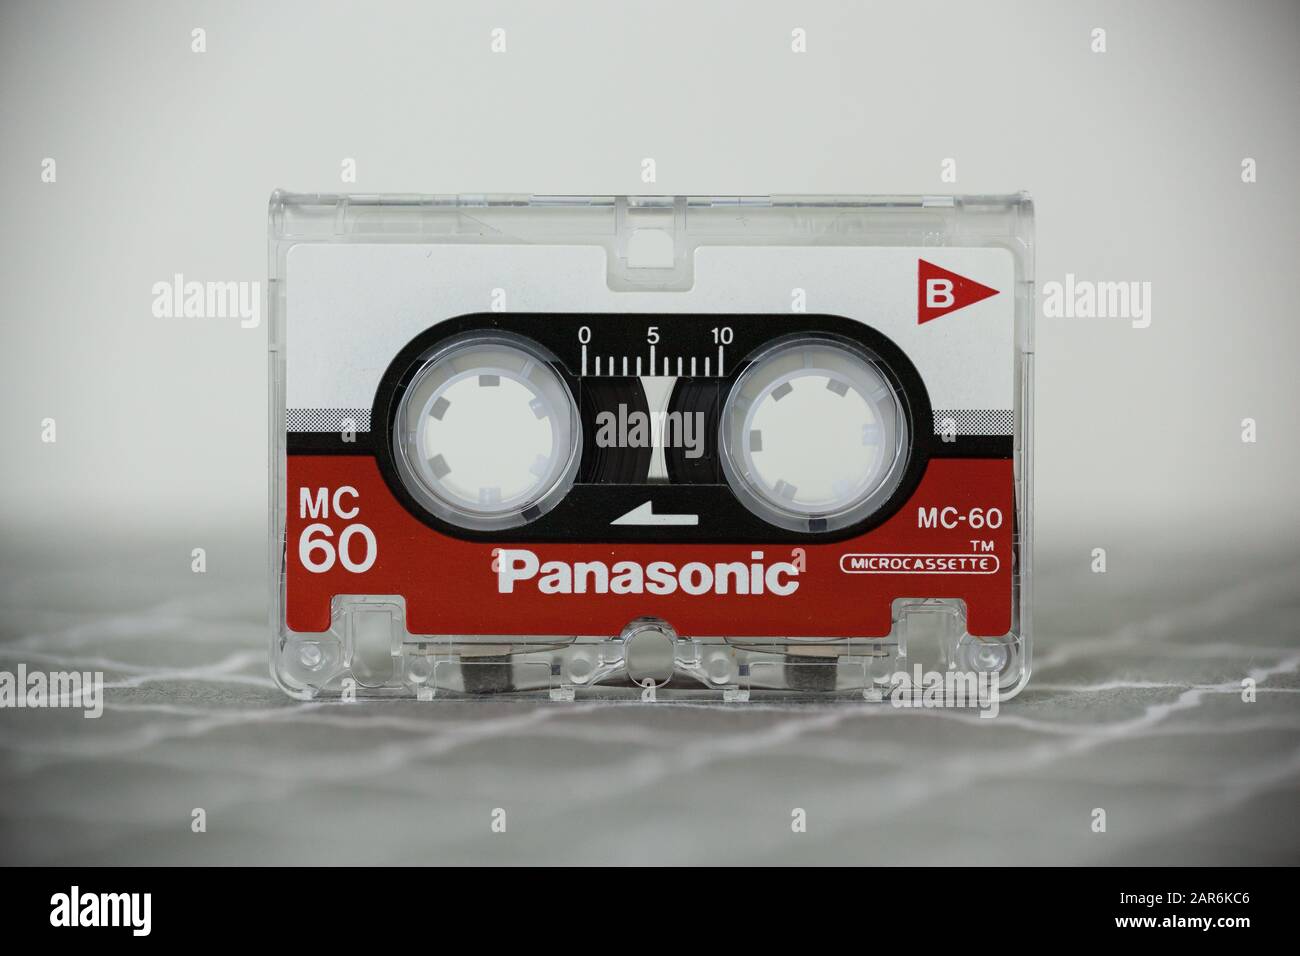 Woodbridge, NEW JERSEY / USA - 25 janvier 2020: Un temps d'enregistrement de 60 minutes microcassette Panasonic est affiché; image éditoriale illustrative. Banque D'Images